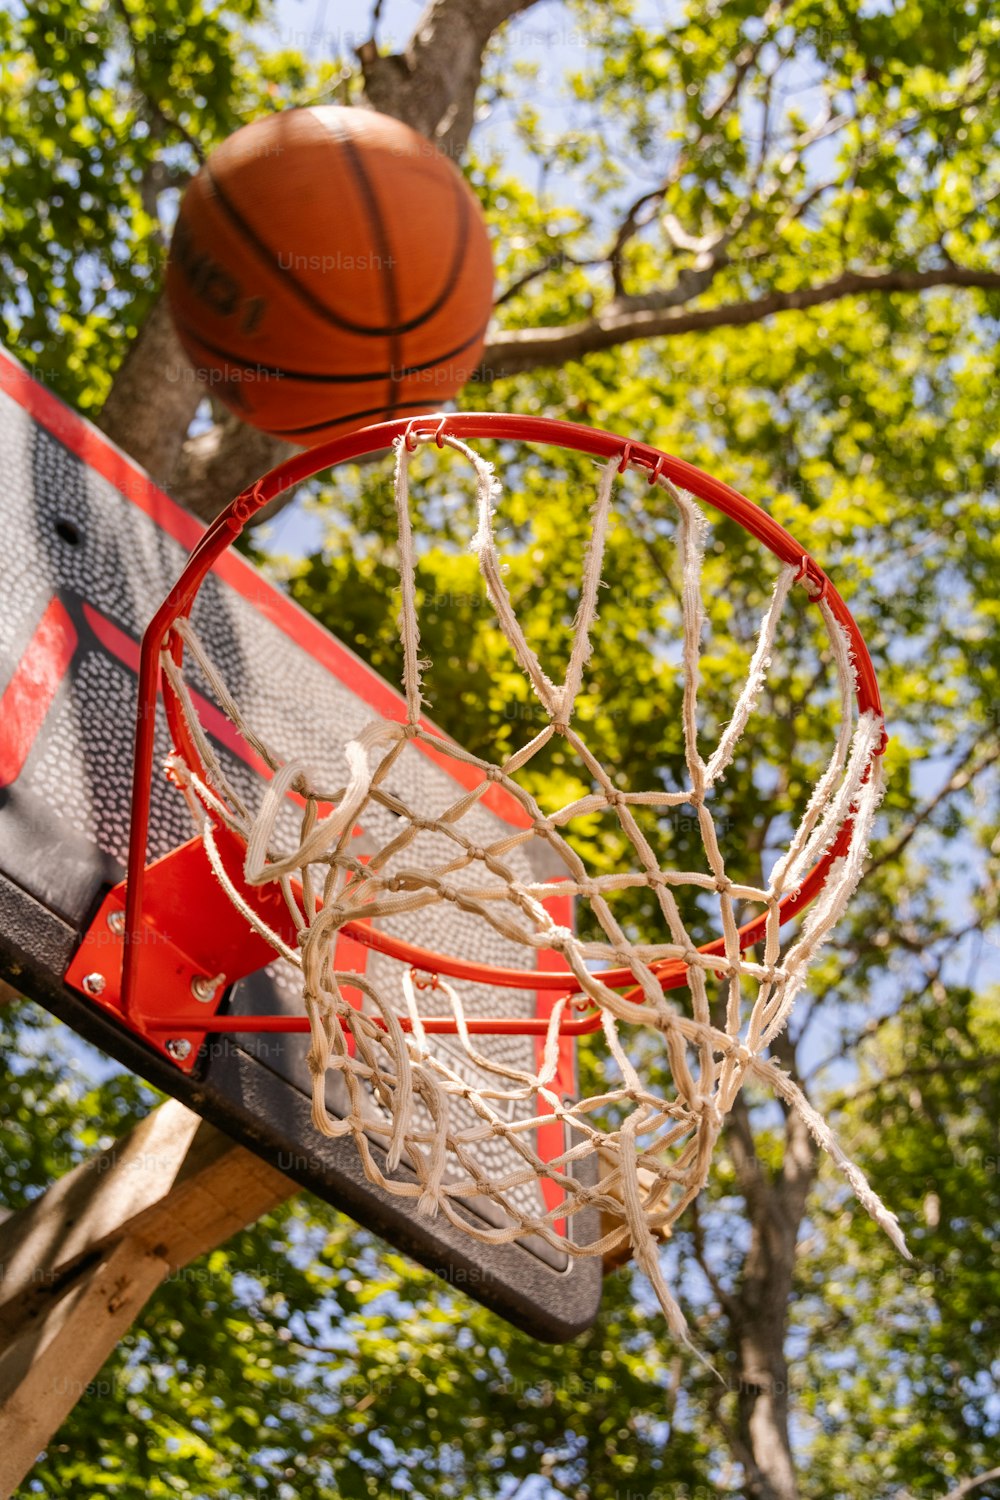 un ballon de basket traversant le filet d’un panier de basket-ball